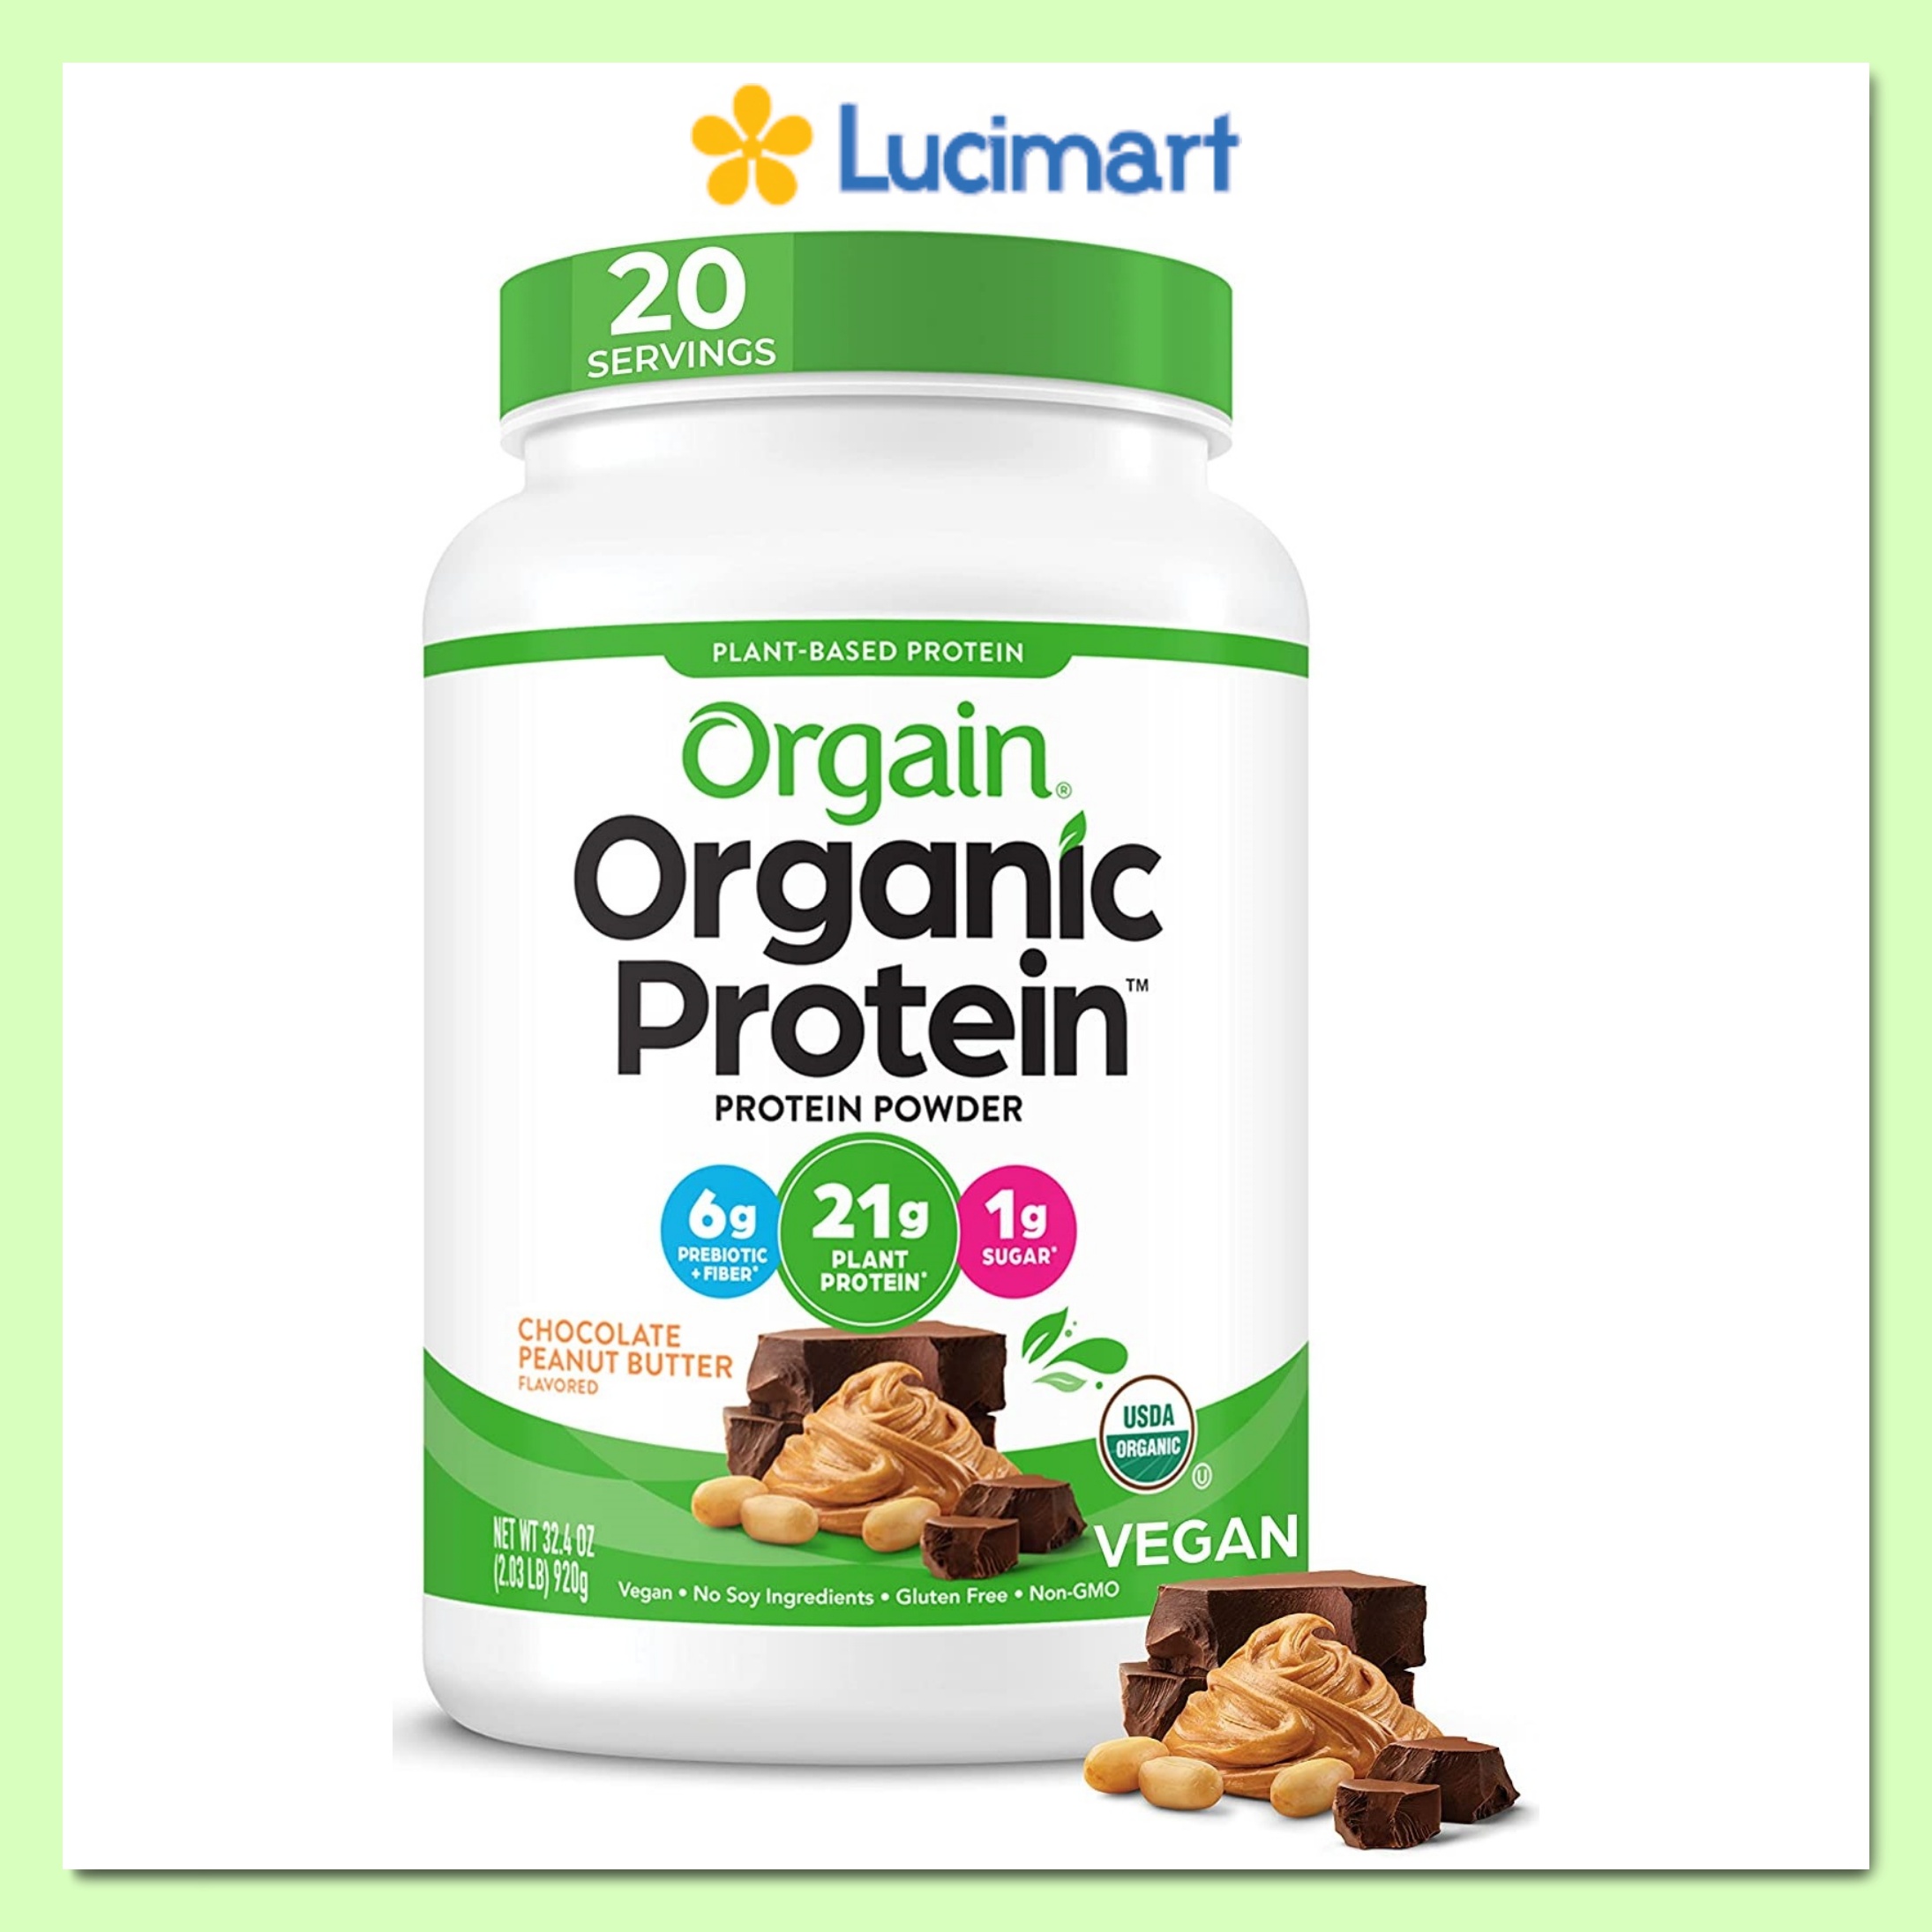 Bột đạm thực vật hữu cơ Orgain Organic Protein Plant Based Protein Powder hương Chocolate Peanut Butter (920g) [Hàng Mỹ] thumbnail